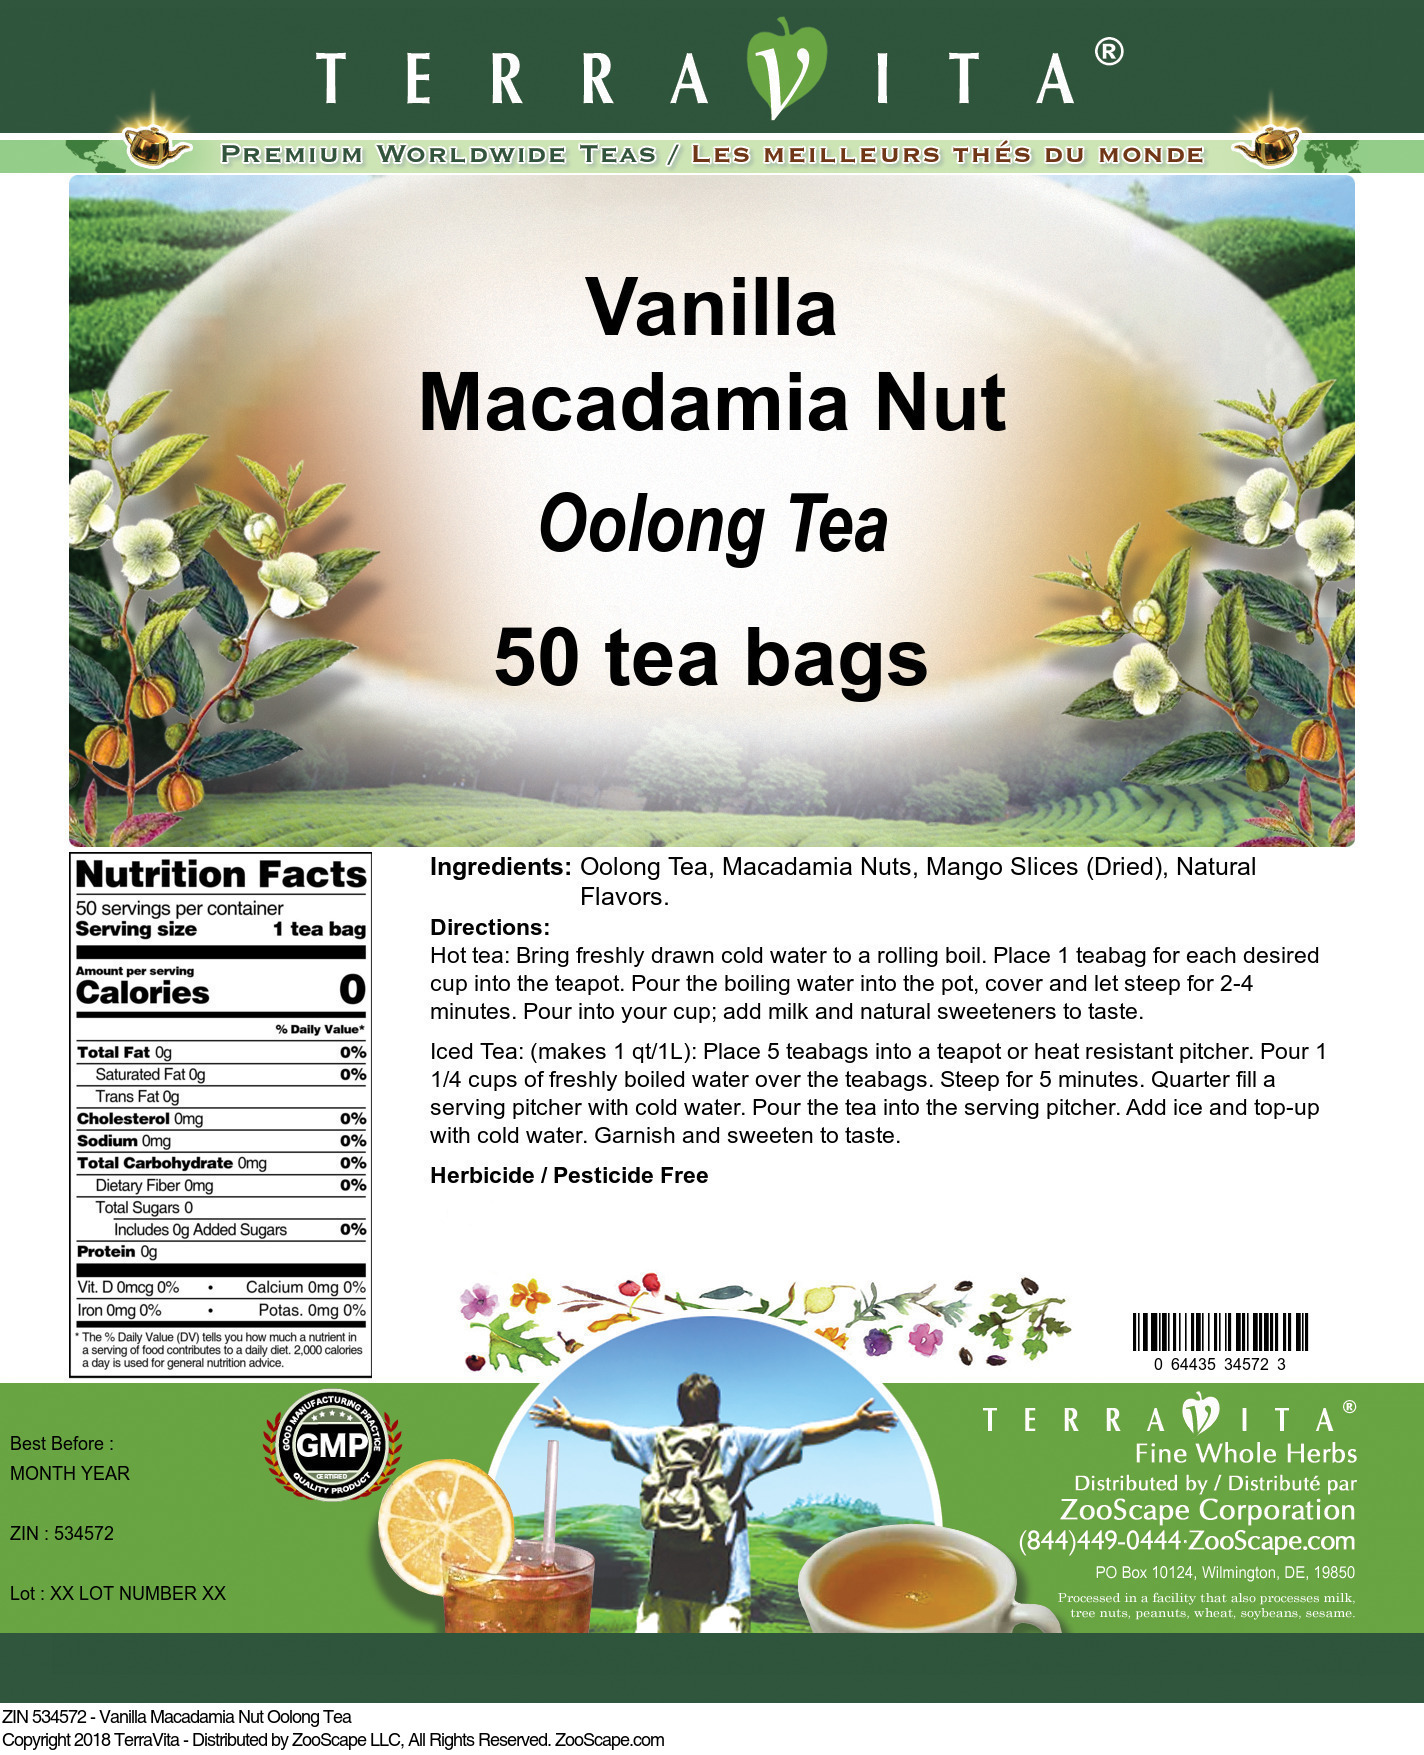 Vanilla Macadamia Nut Oolong Tea - Label